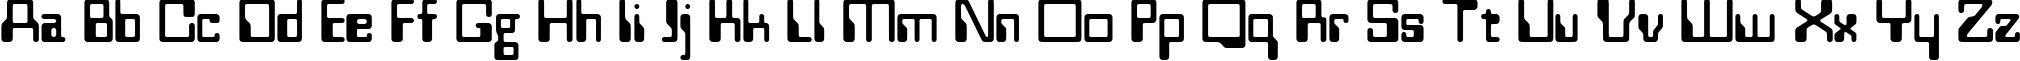 Пример написания английского алфавита шрифтом Westminster